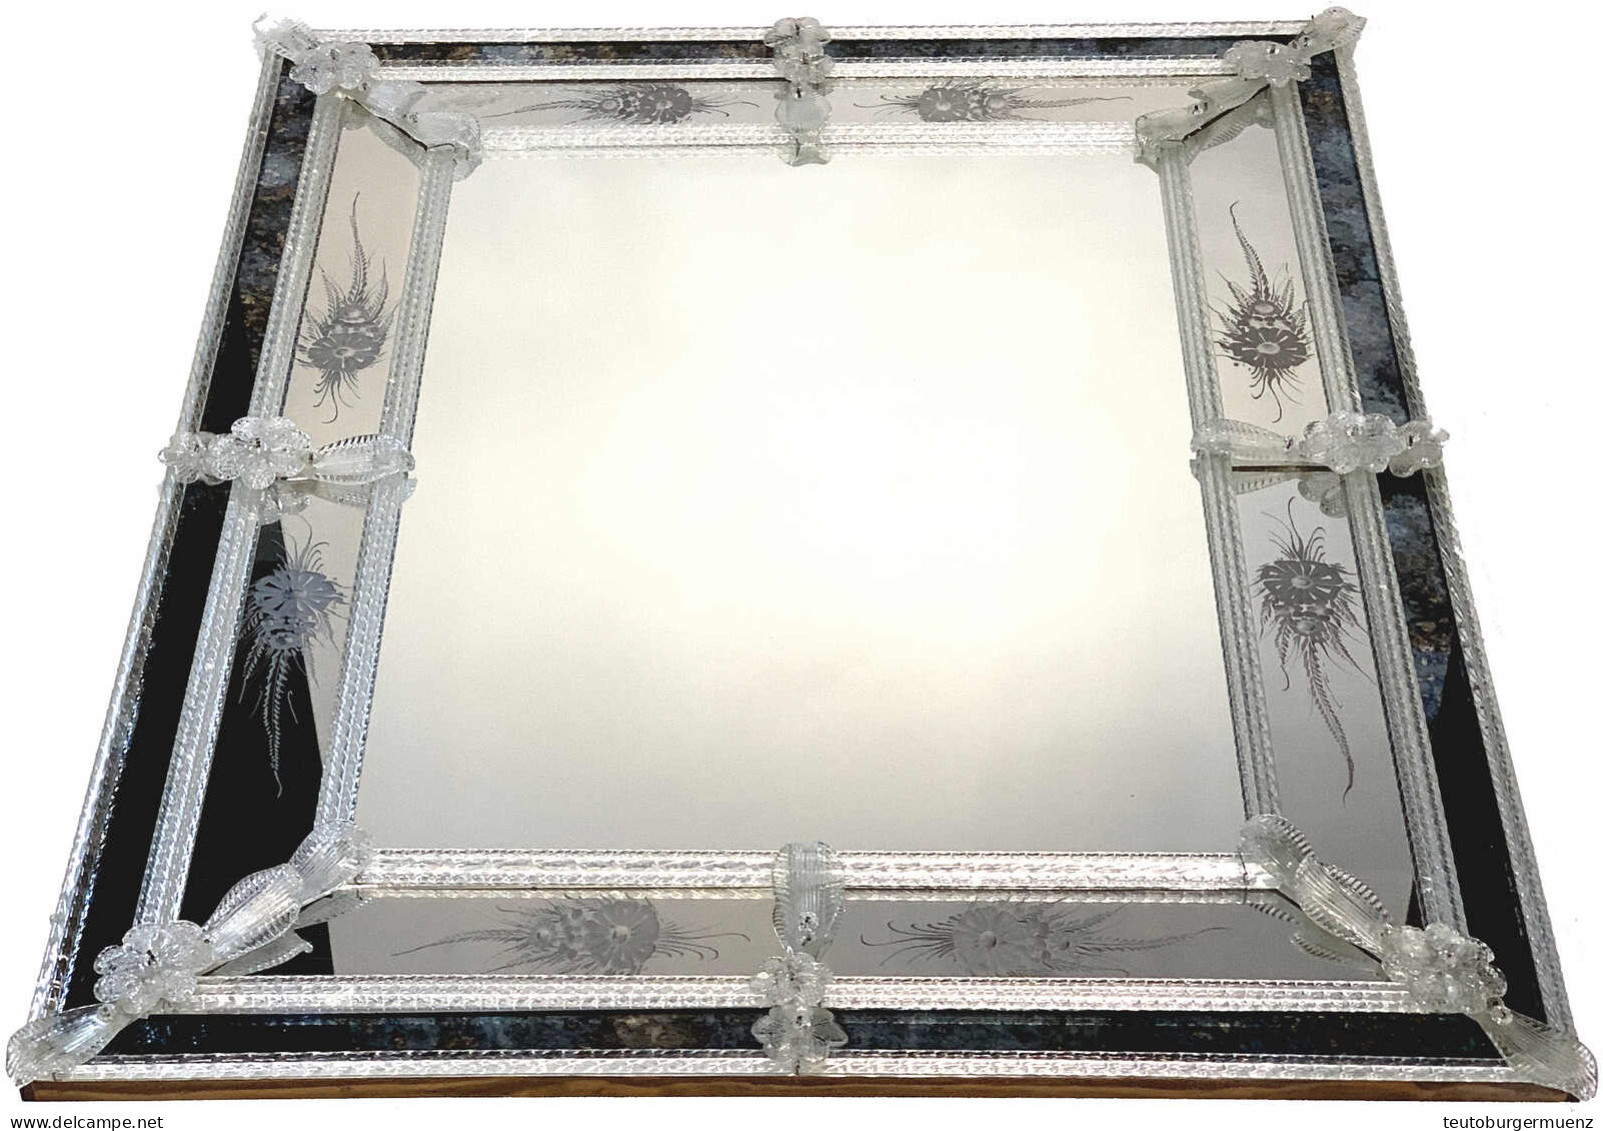 Prunkvoller Wandspiegel Aus Murano-Glas. 82 X 101 Cm. KEIN VERSAND/NO SHIPPING POSSIBLE - Glas & Kristall